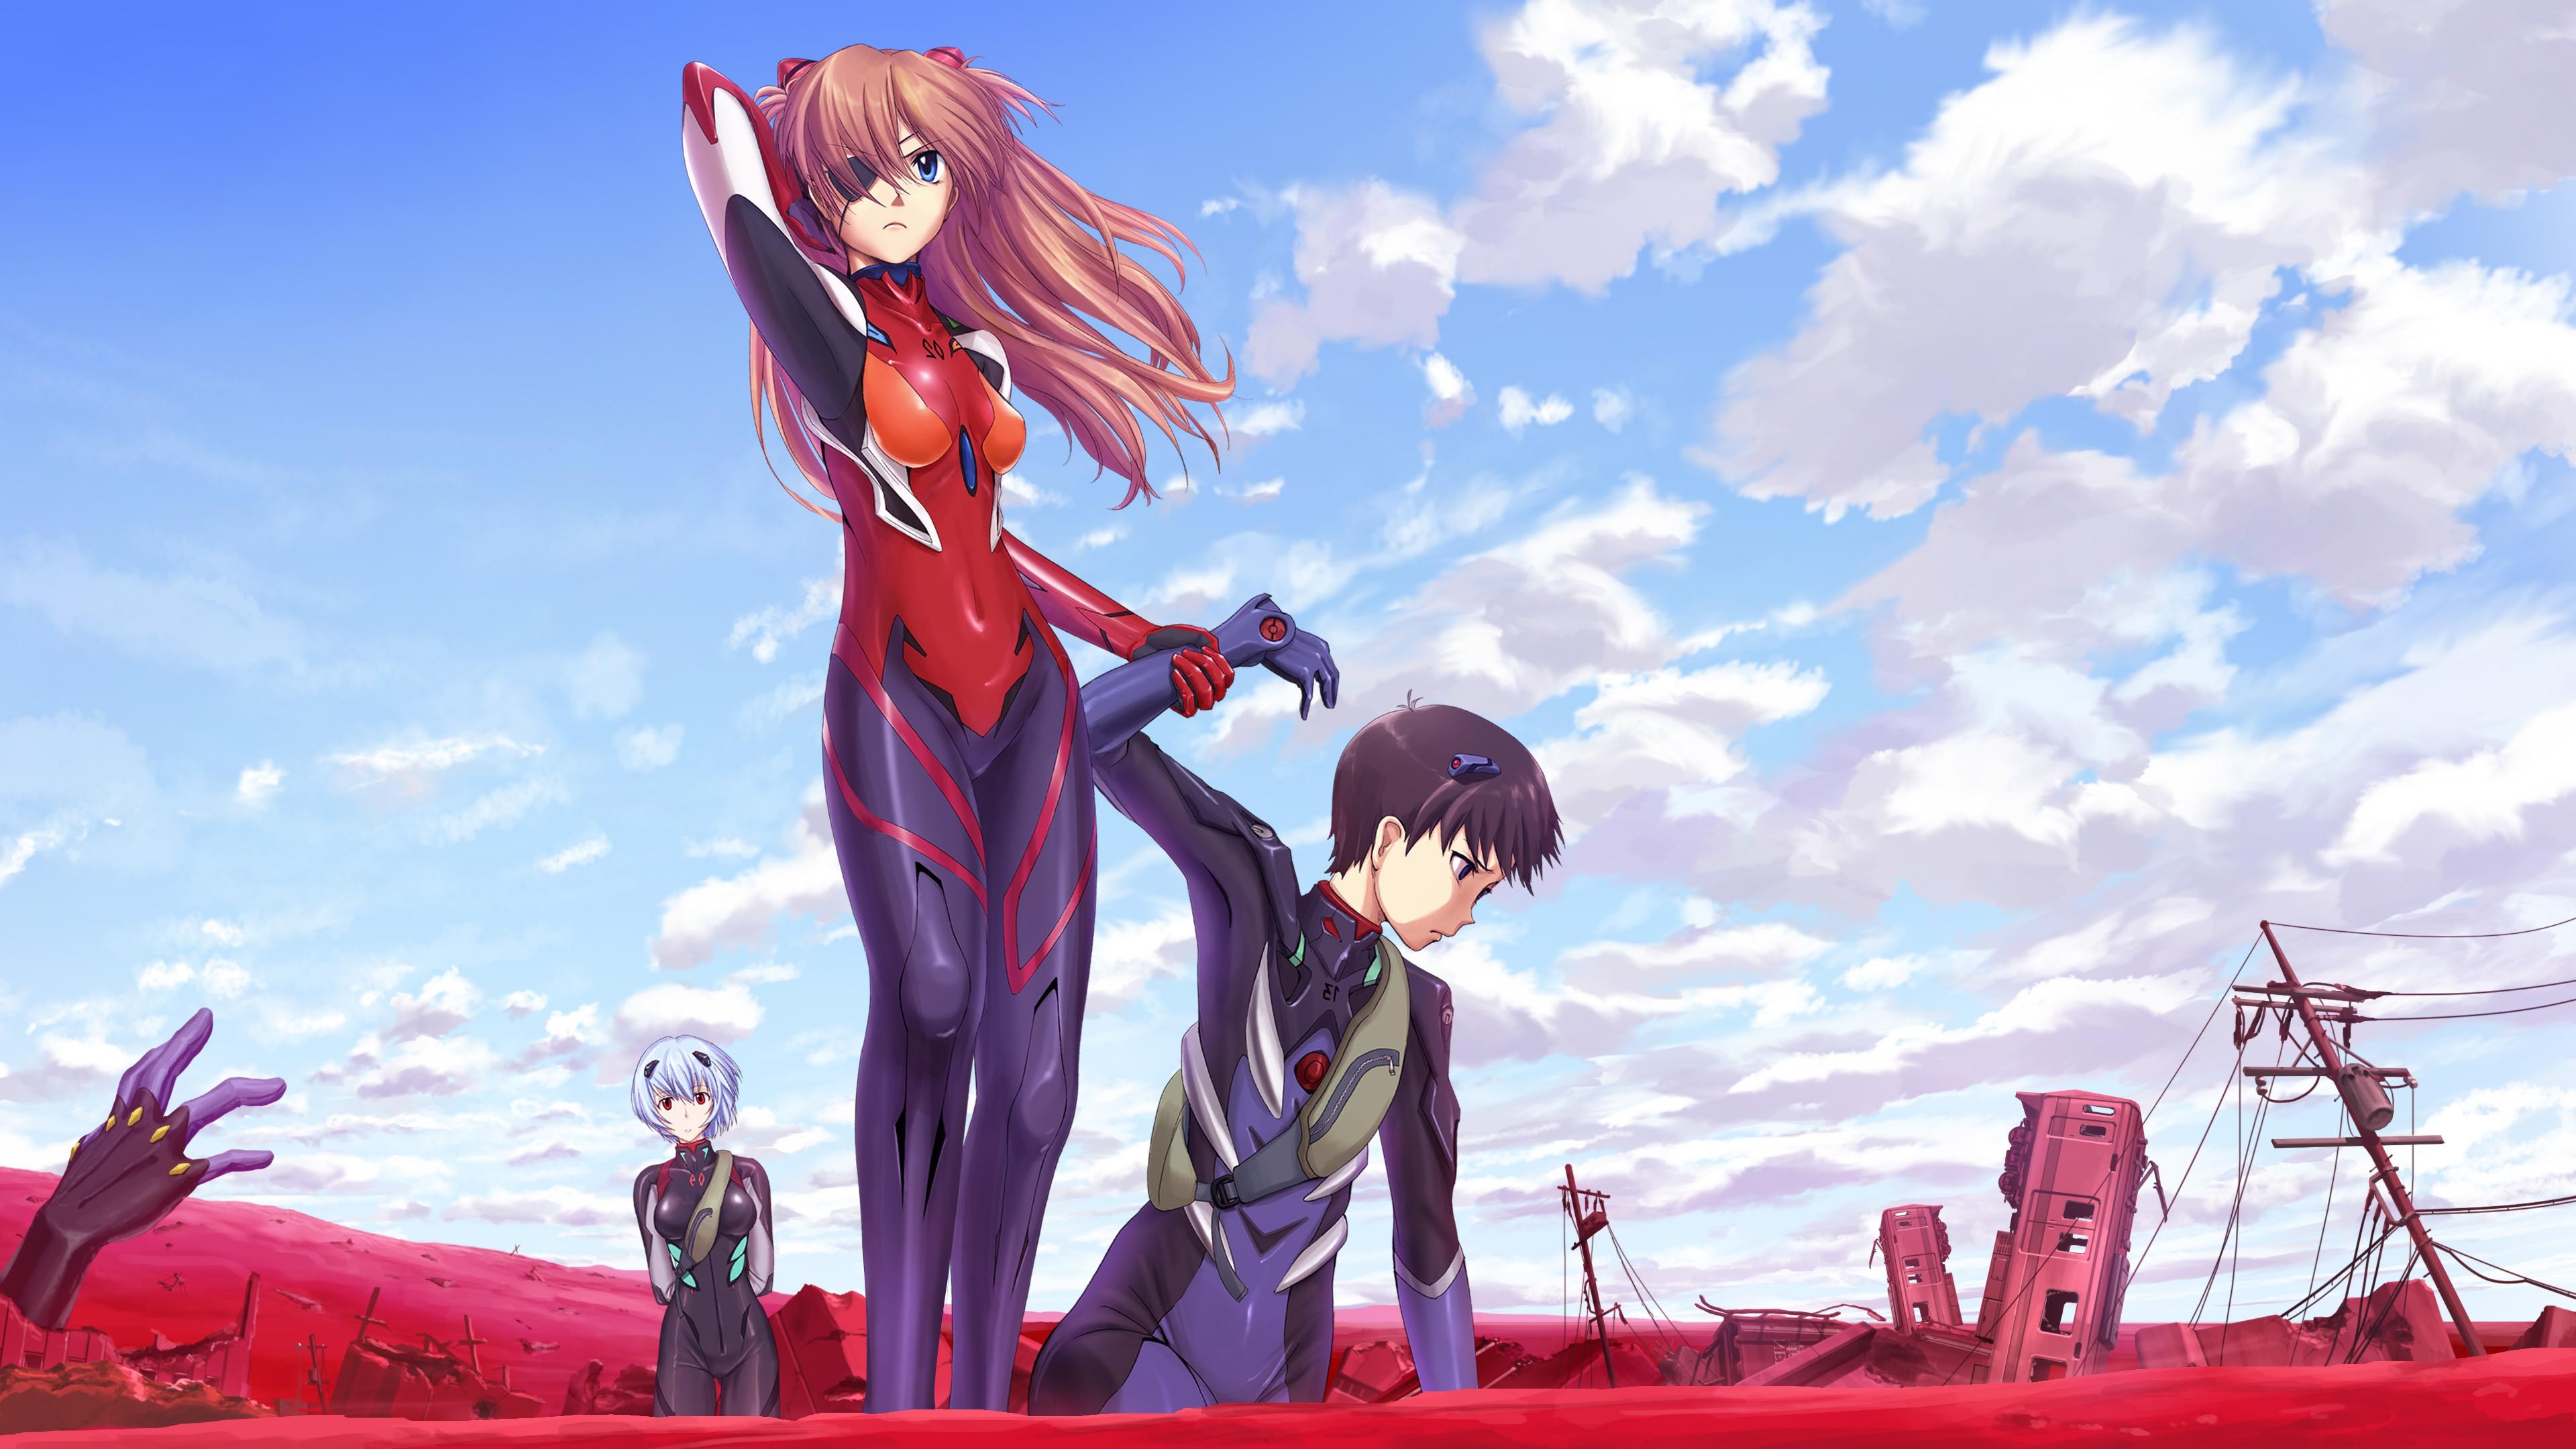 3840 x 2160 · jpeg - Neon Genesis Evangelion, Anime, Asuka Langley Soryu, Ikari Shinji ...